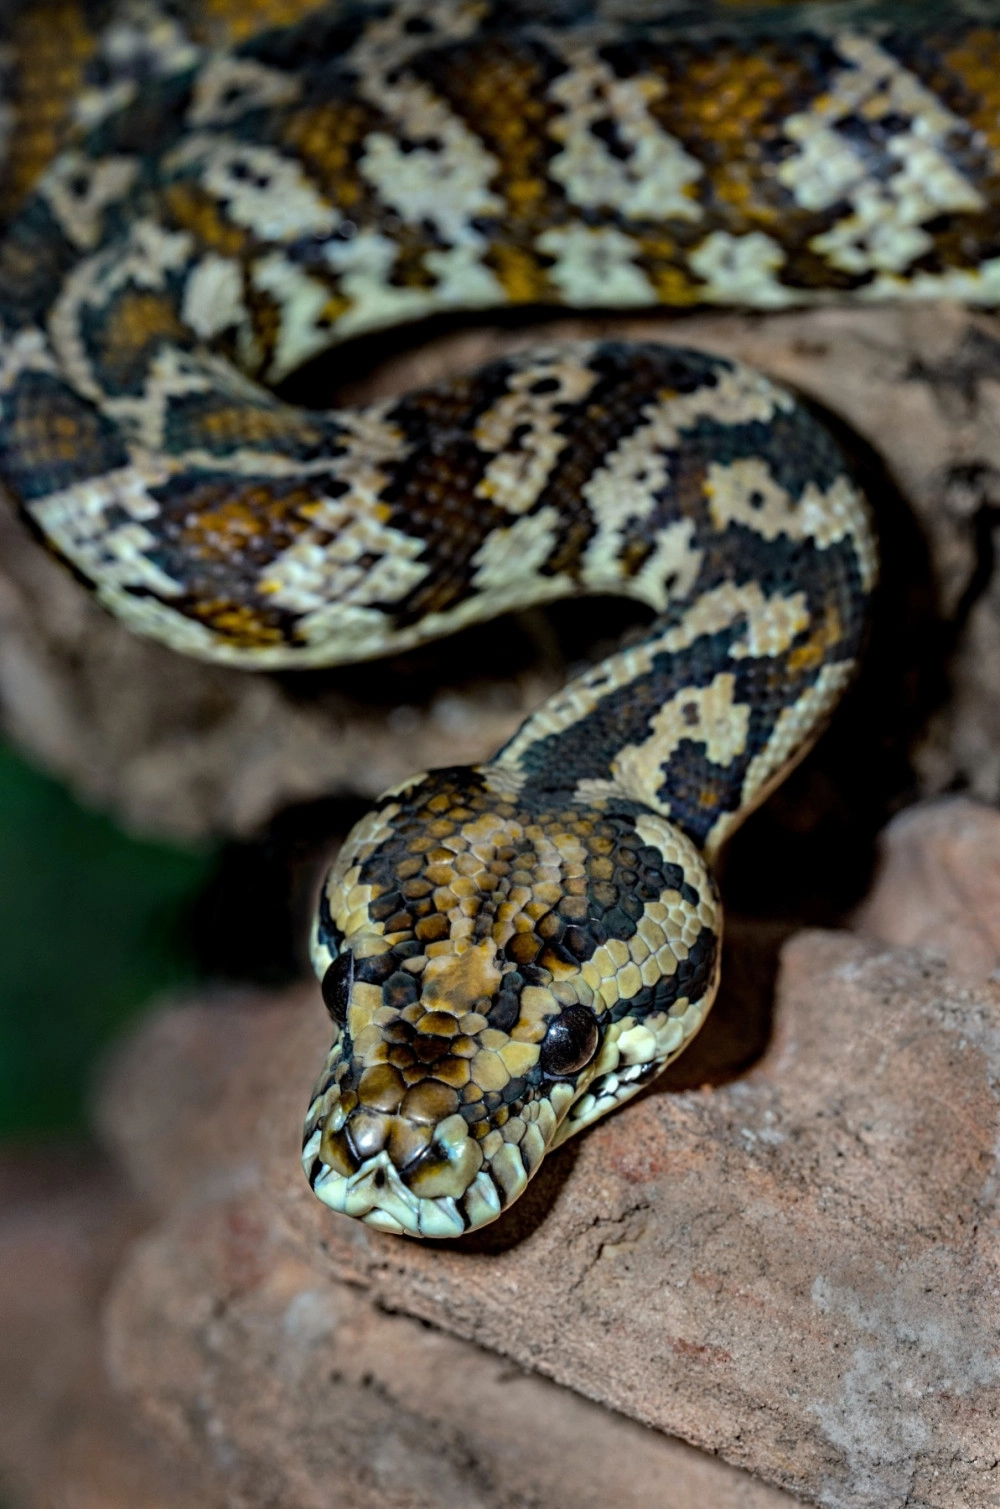 A carpet python